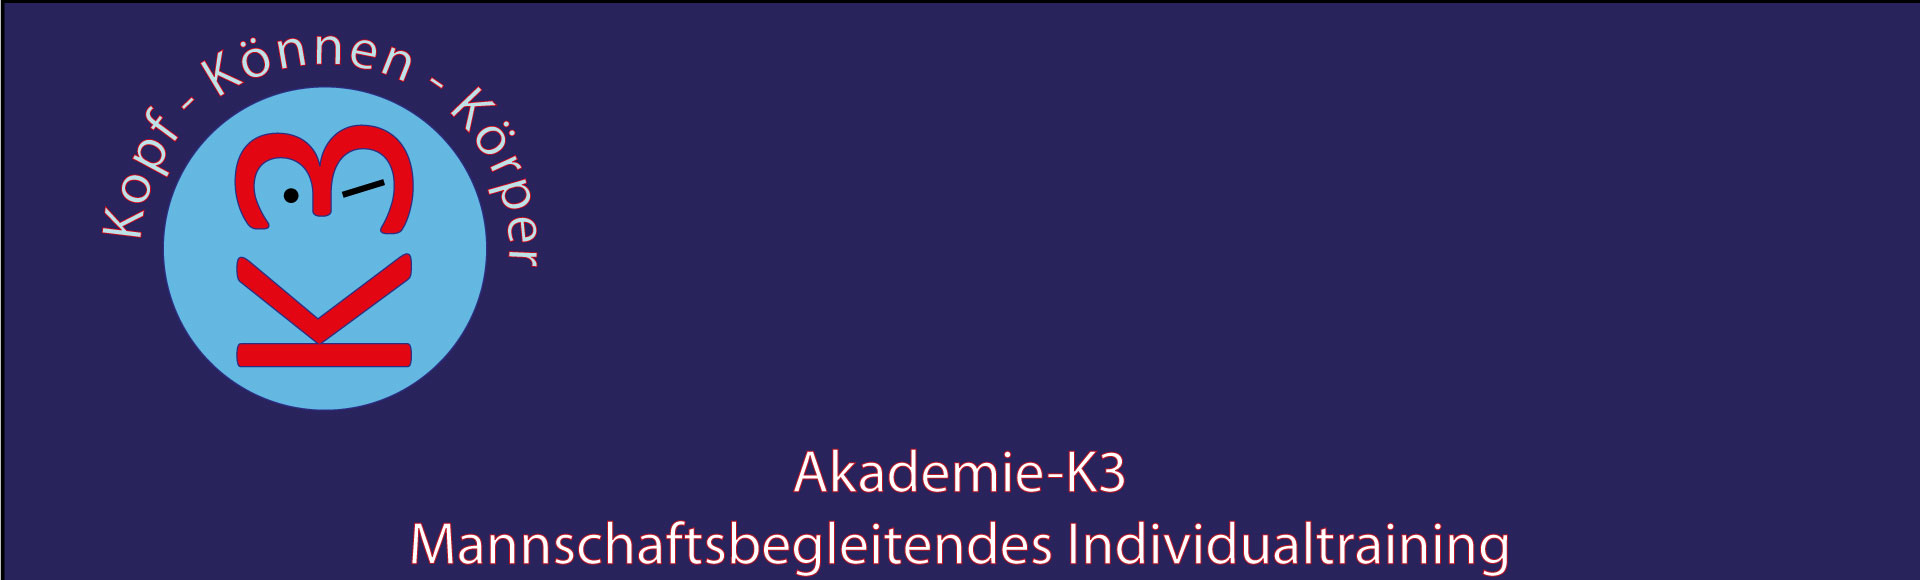 Akademie K3